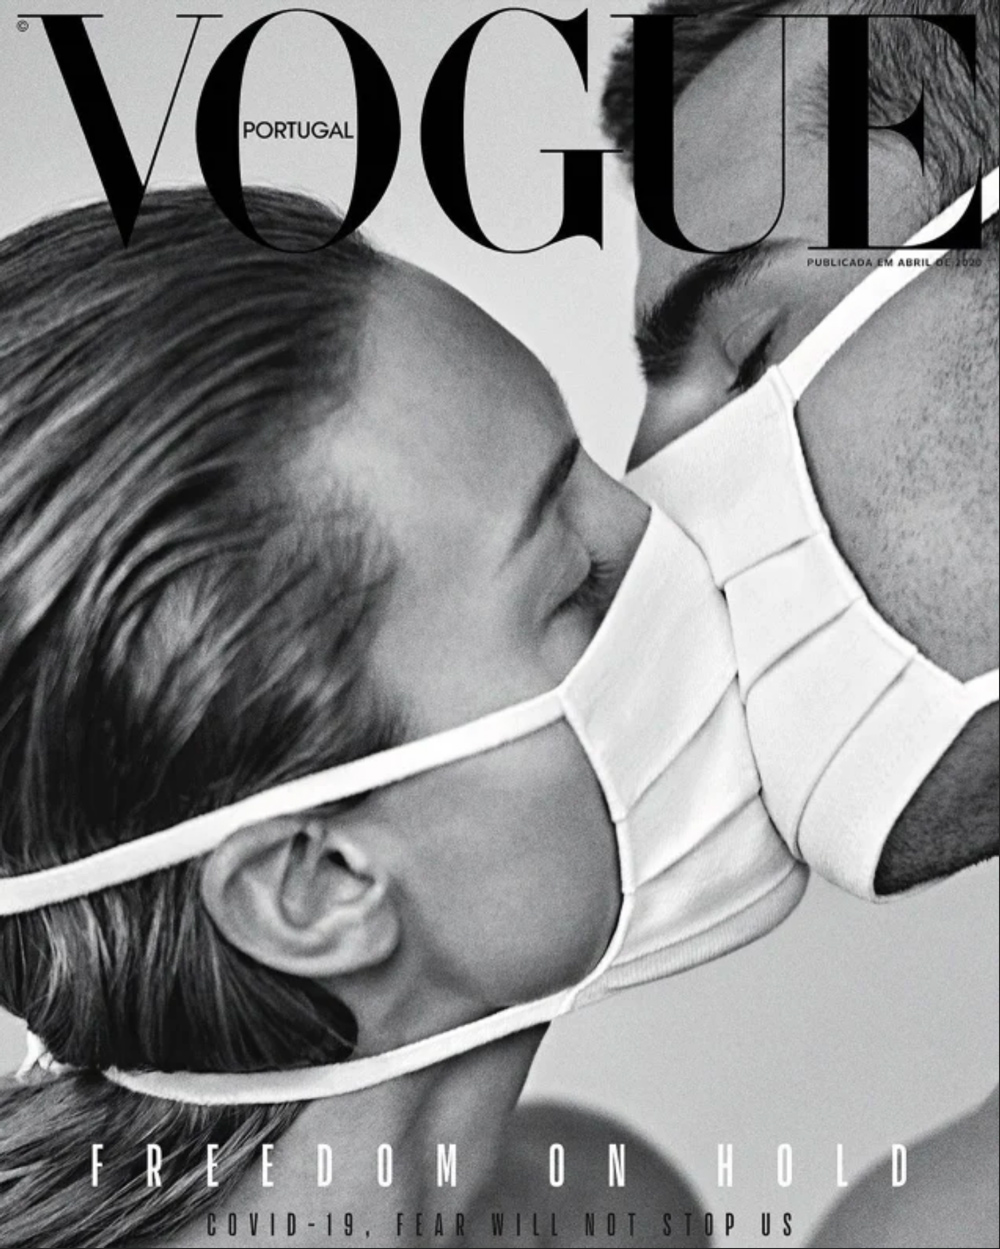 Vogue Portugal April 2020